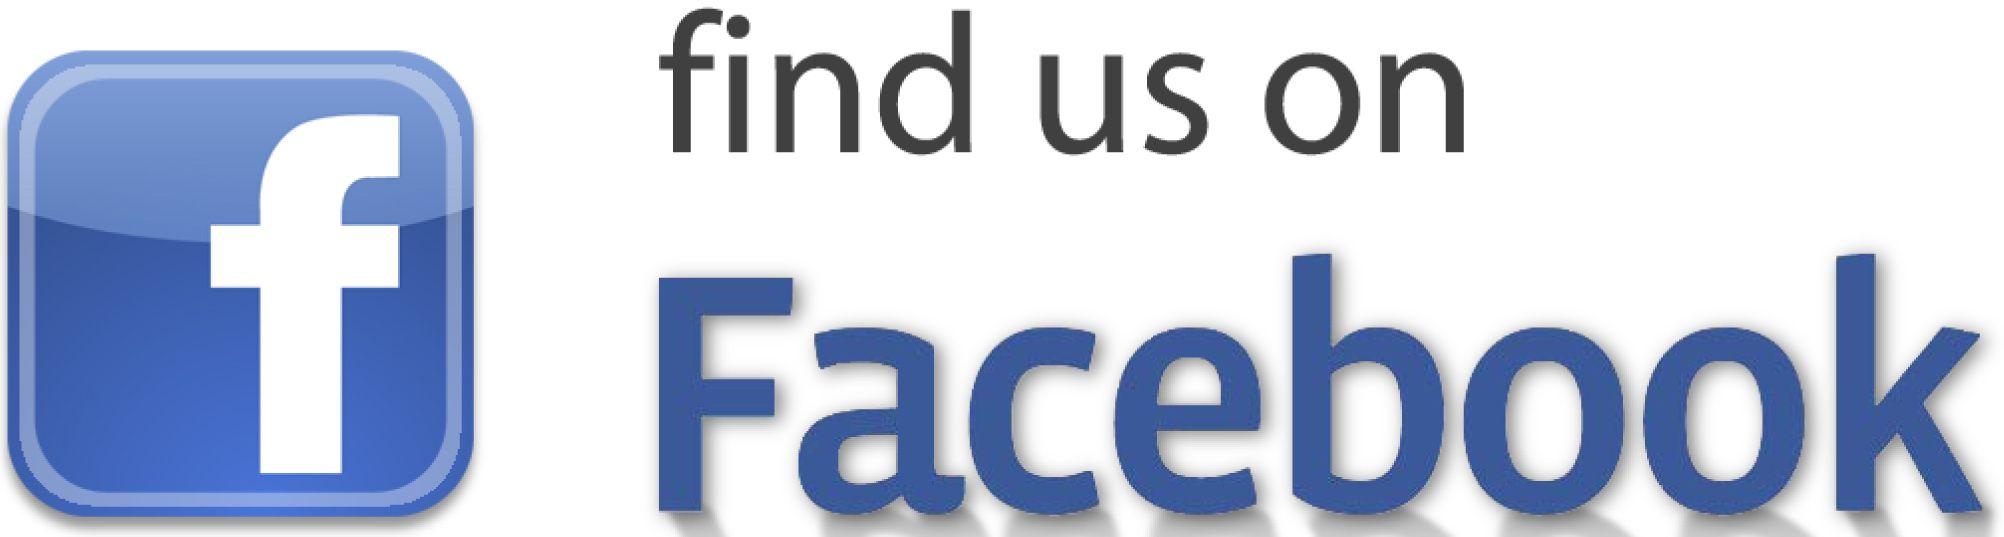 Find Us On Facebook Logo - facebook-logo-001 | My CMS